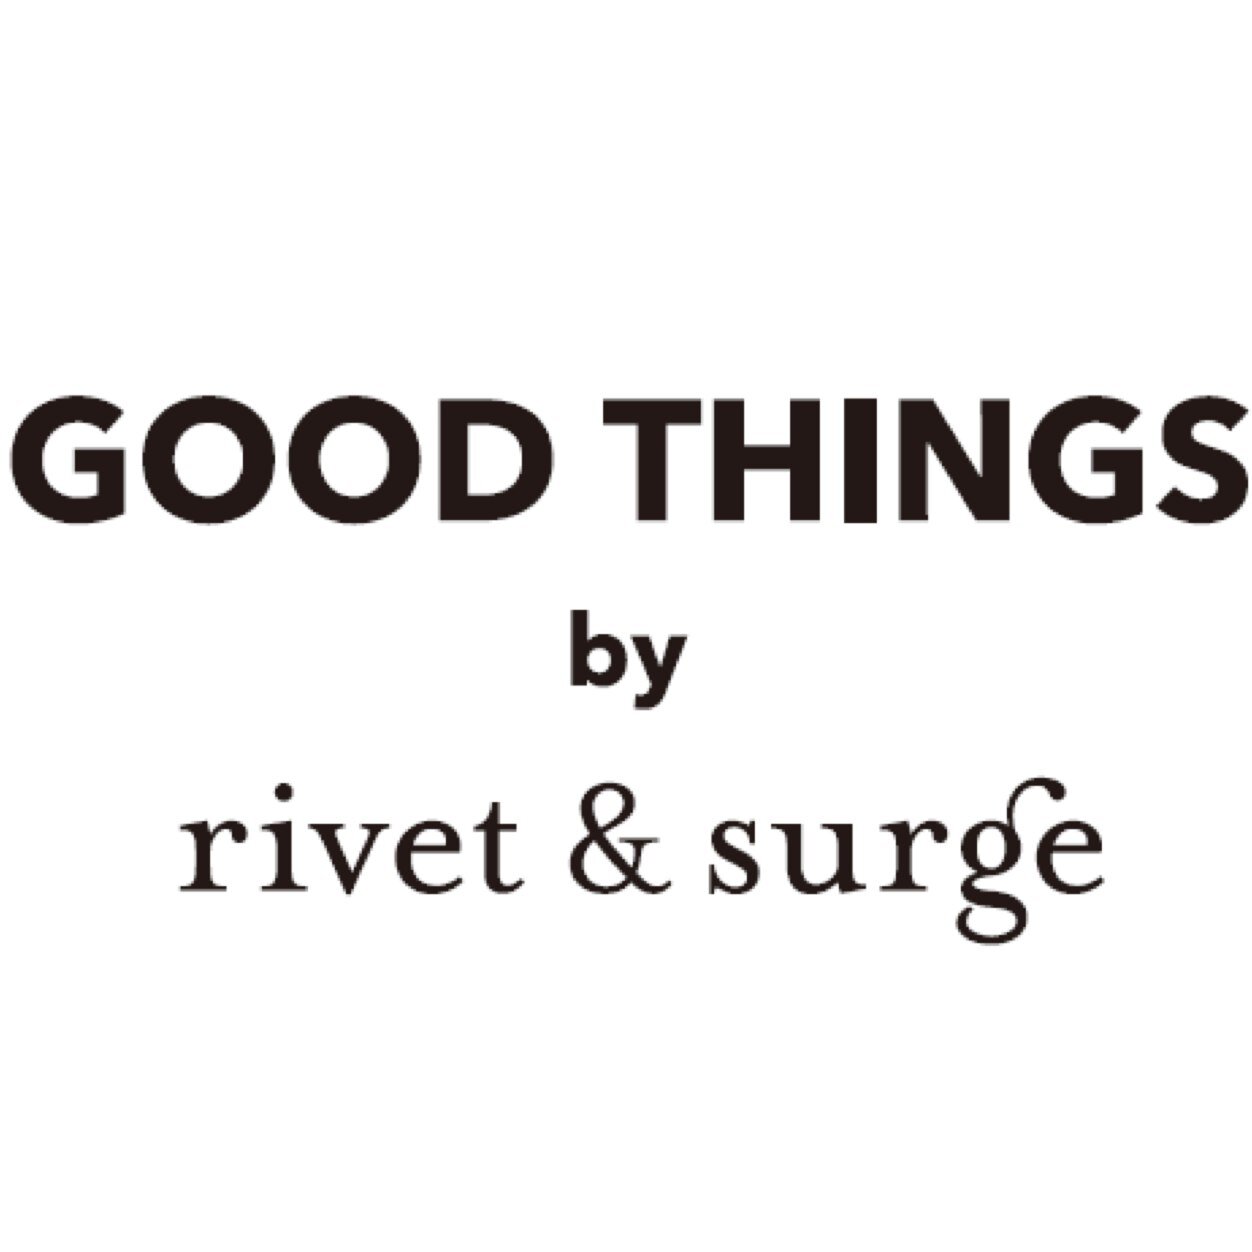 GOOD THINGS by rivet&surge 1号店です。rivet&surgeのカジュアルテイストはそのままに、よりナチュラルで幅広い品揃え。きっとお気に入りの一枚が見つかるショップです。